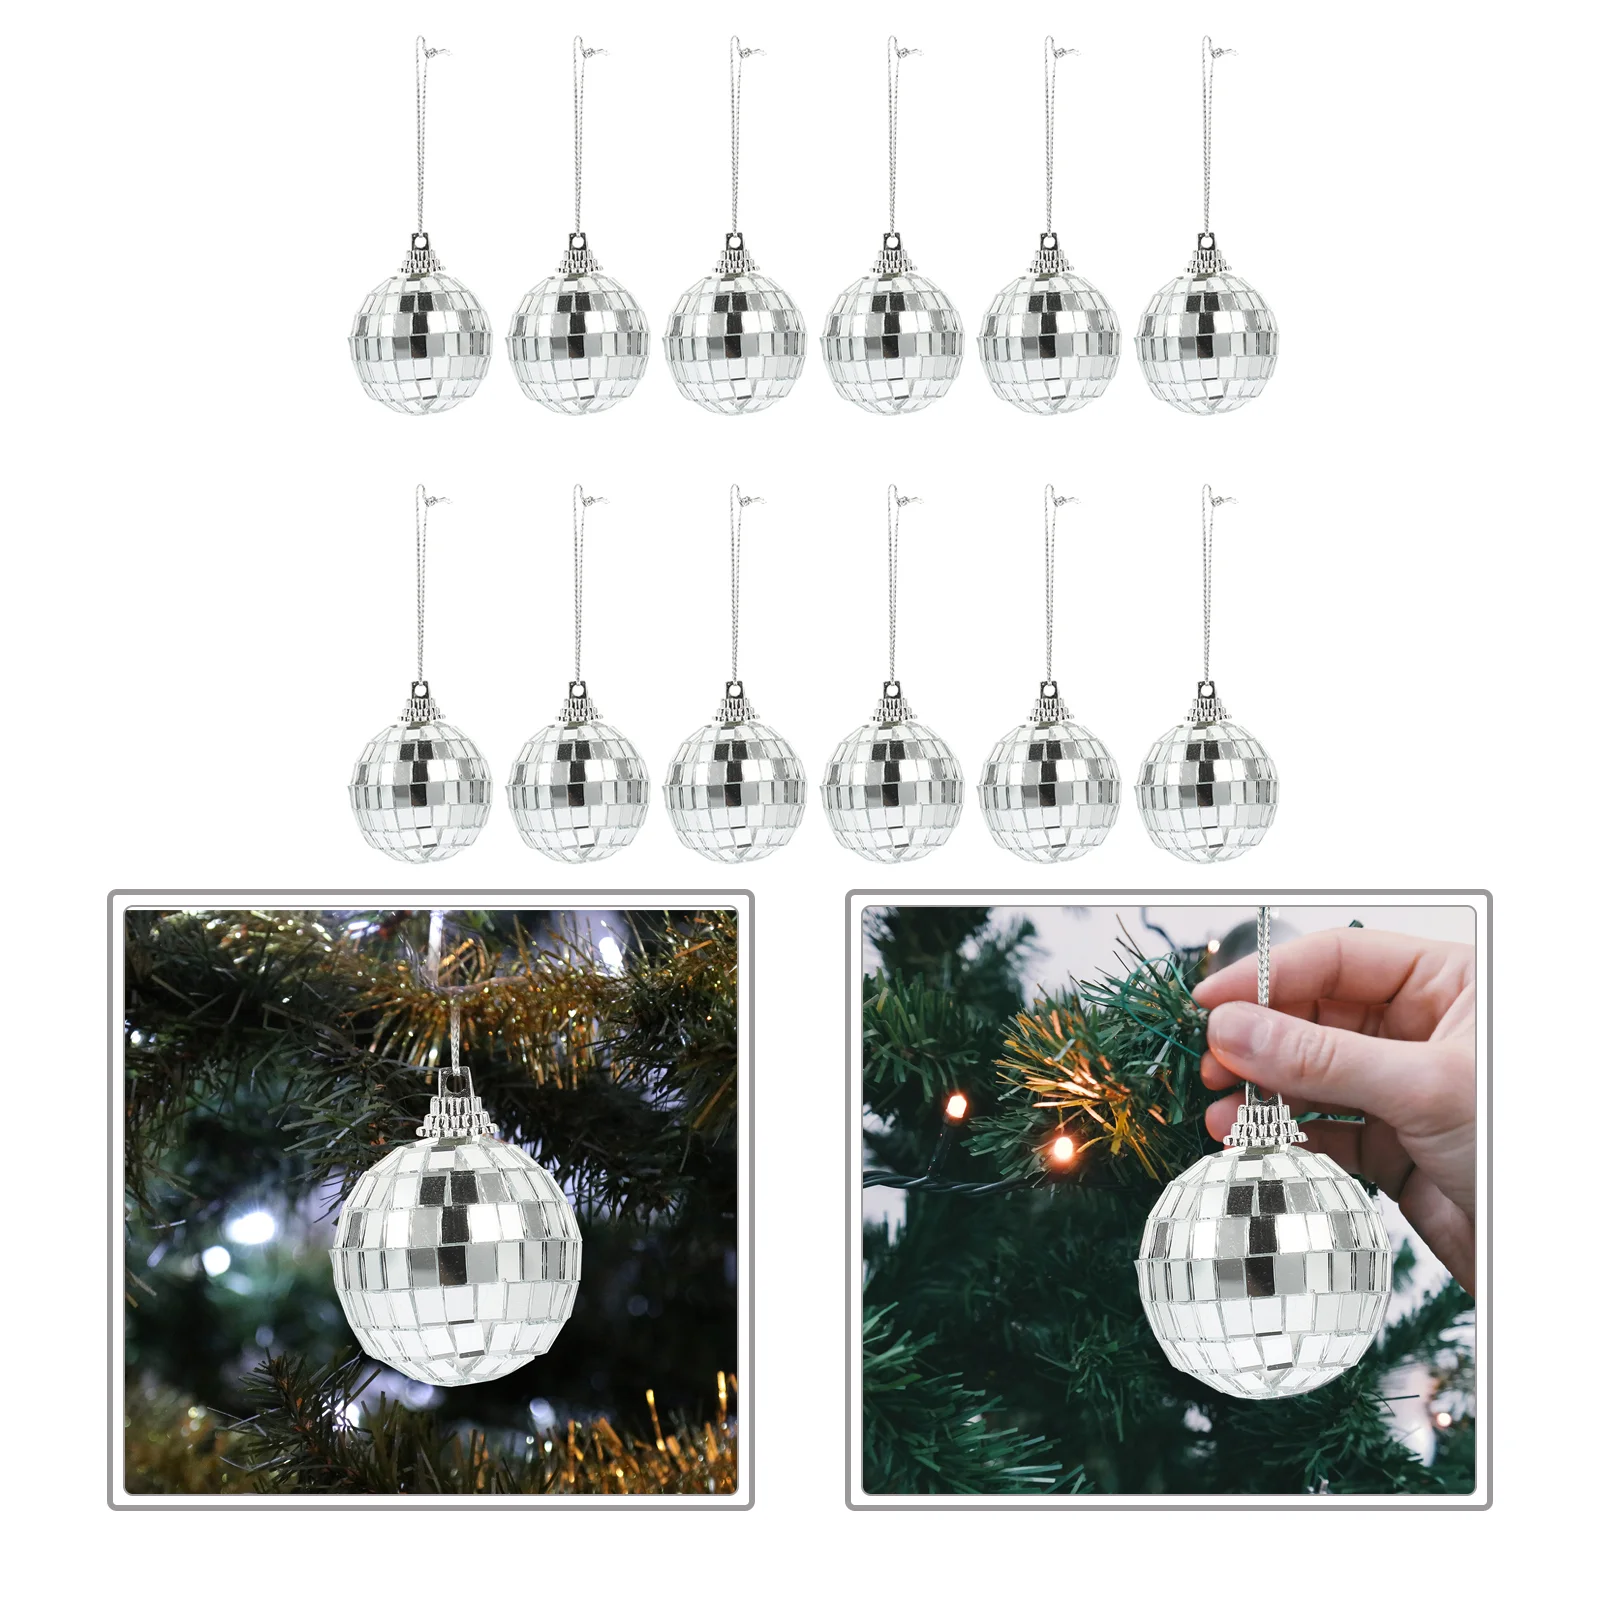 

Светоотражающий шар для дискотеки, рождественские зеркальные стеклянные сферические шары, украшение для бара, рождественские украшения